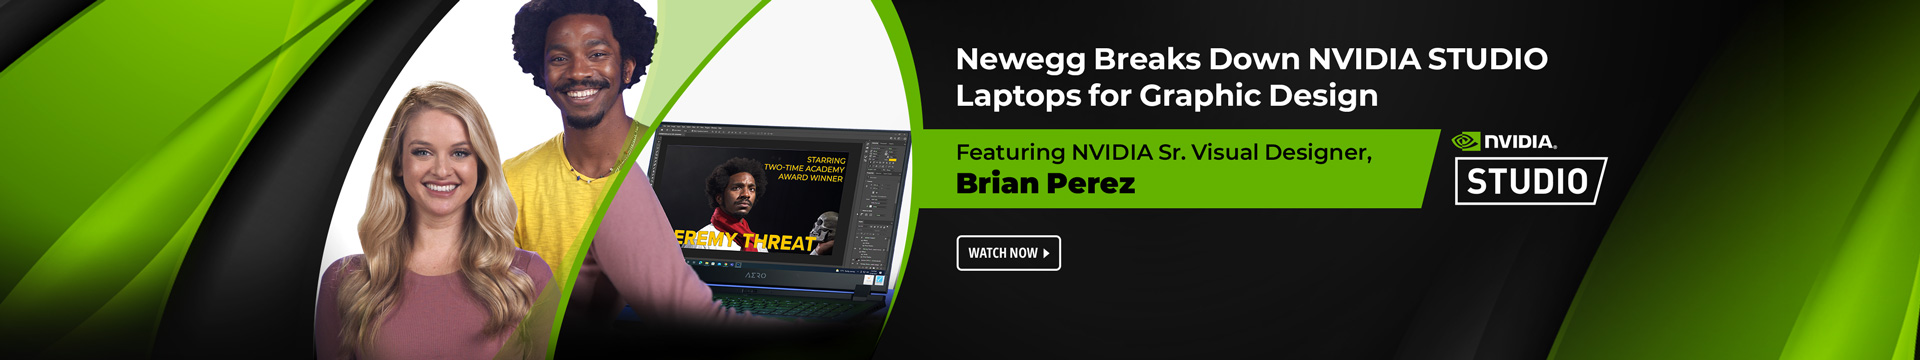 Newegg Breaks Down Nvidia Studio Laptops for Graphic Design